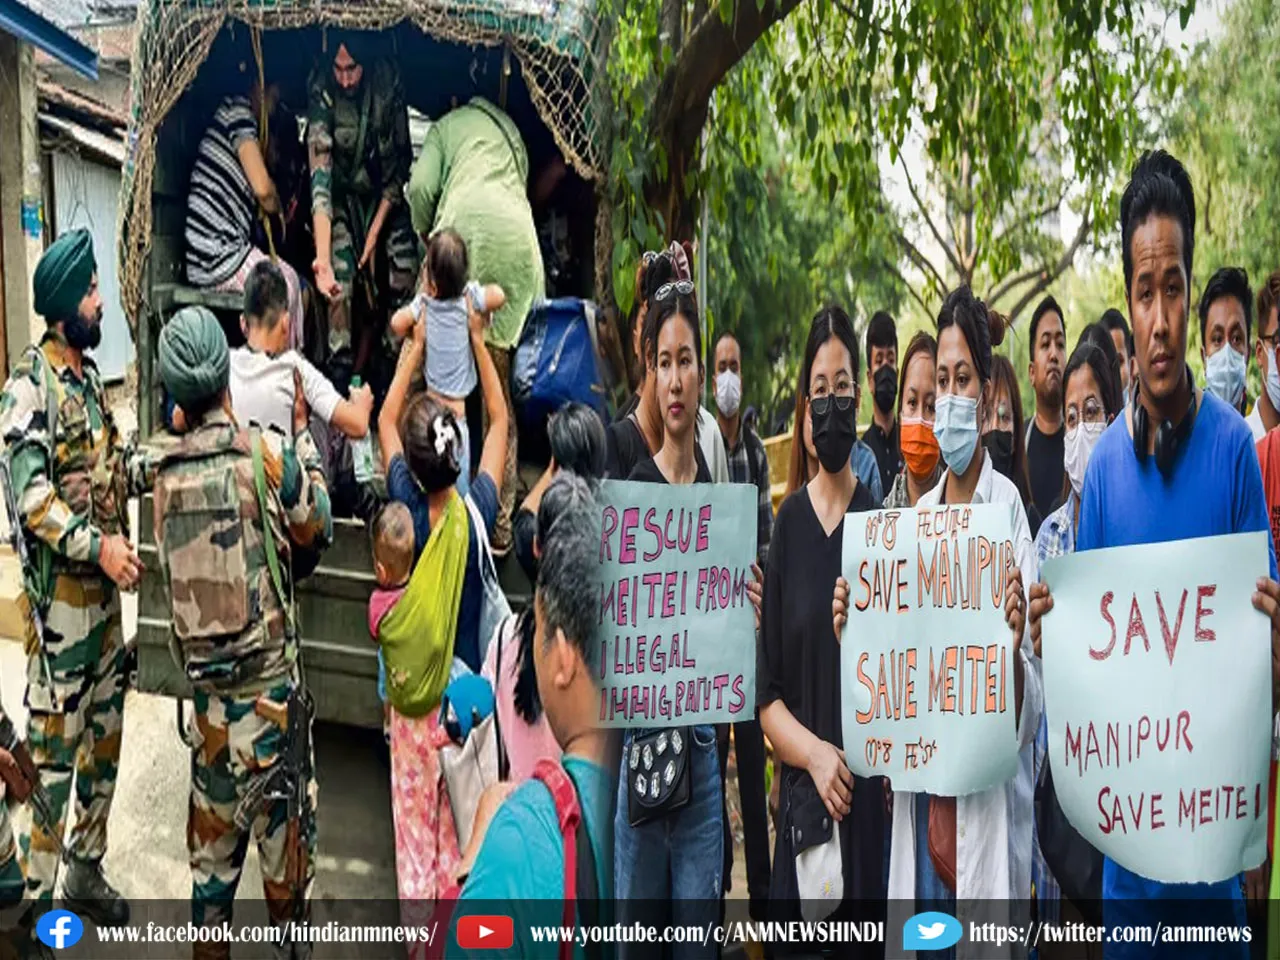 Manipur violence : क्या बद से बदतर होता जा रहा है?